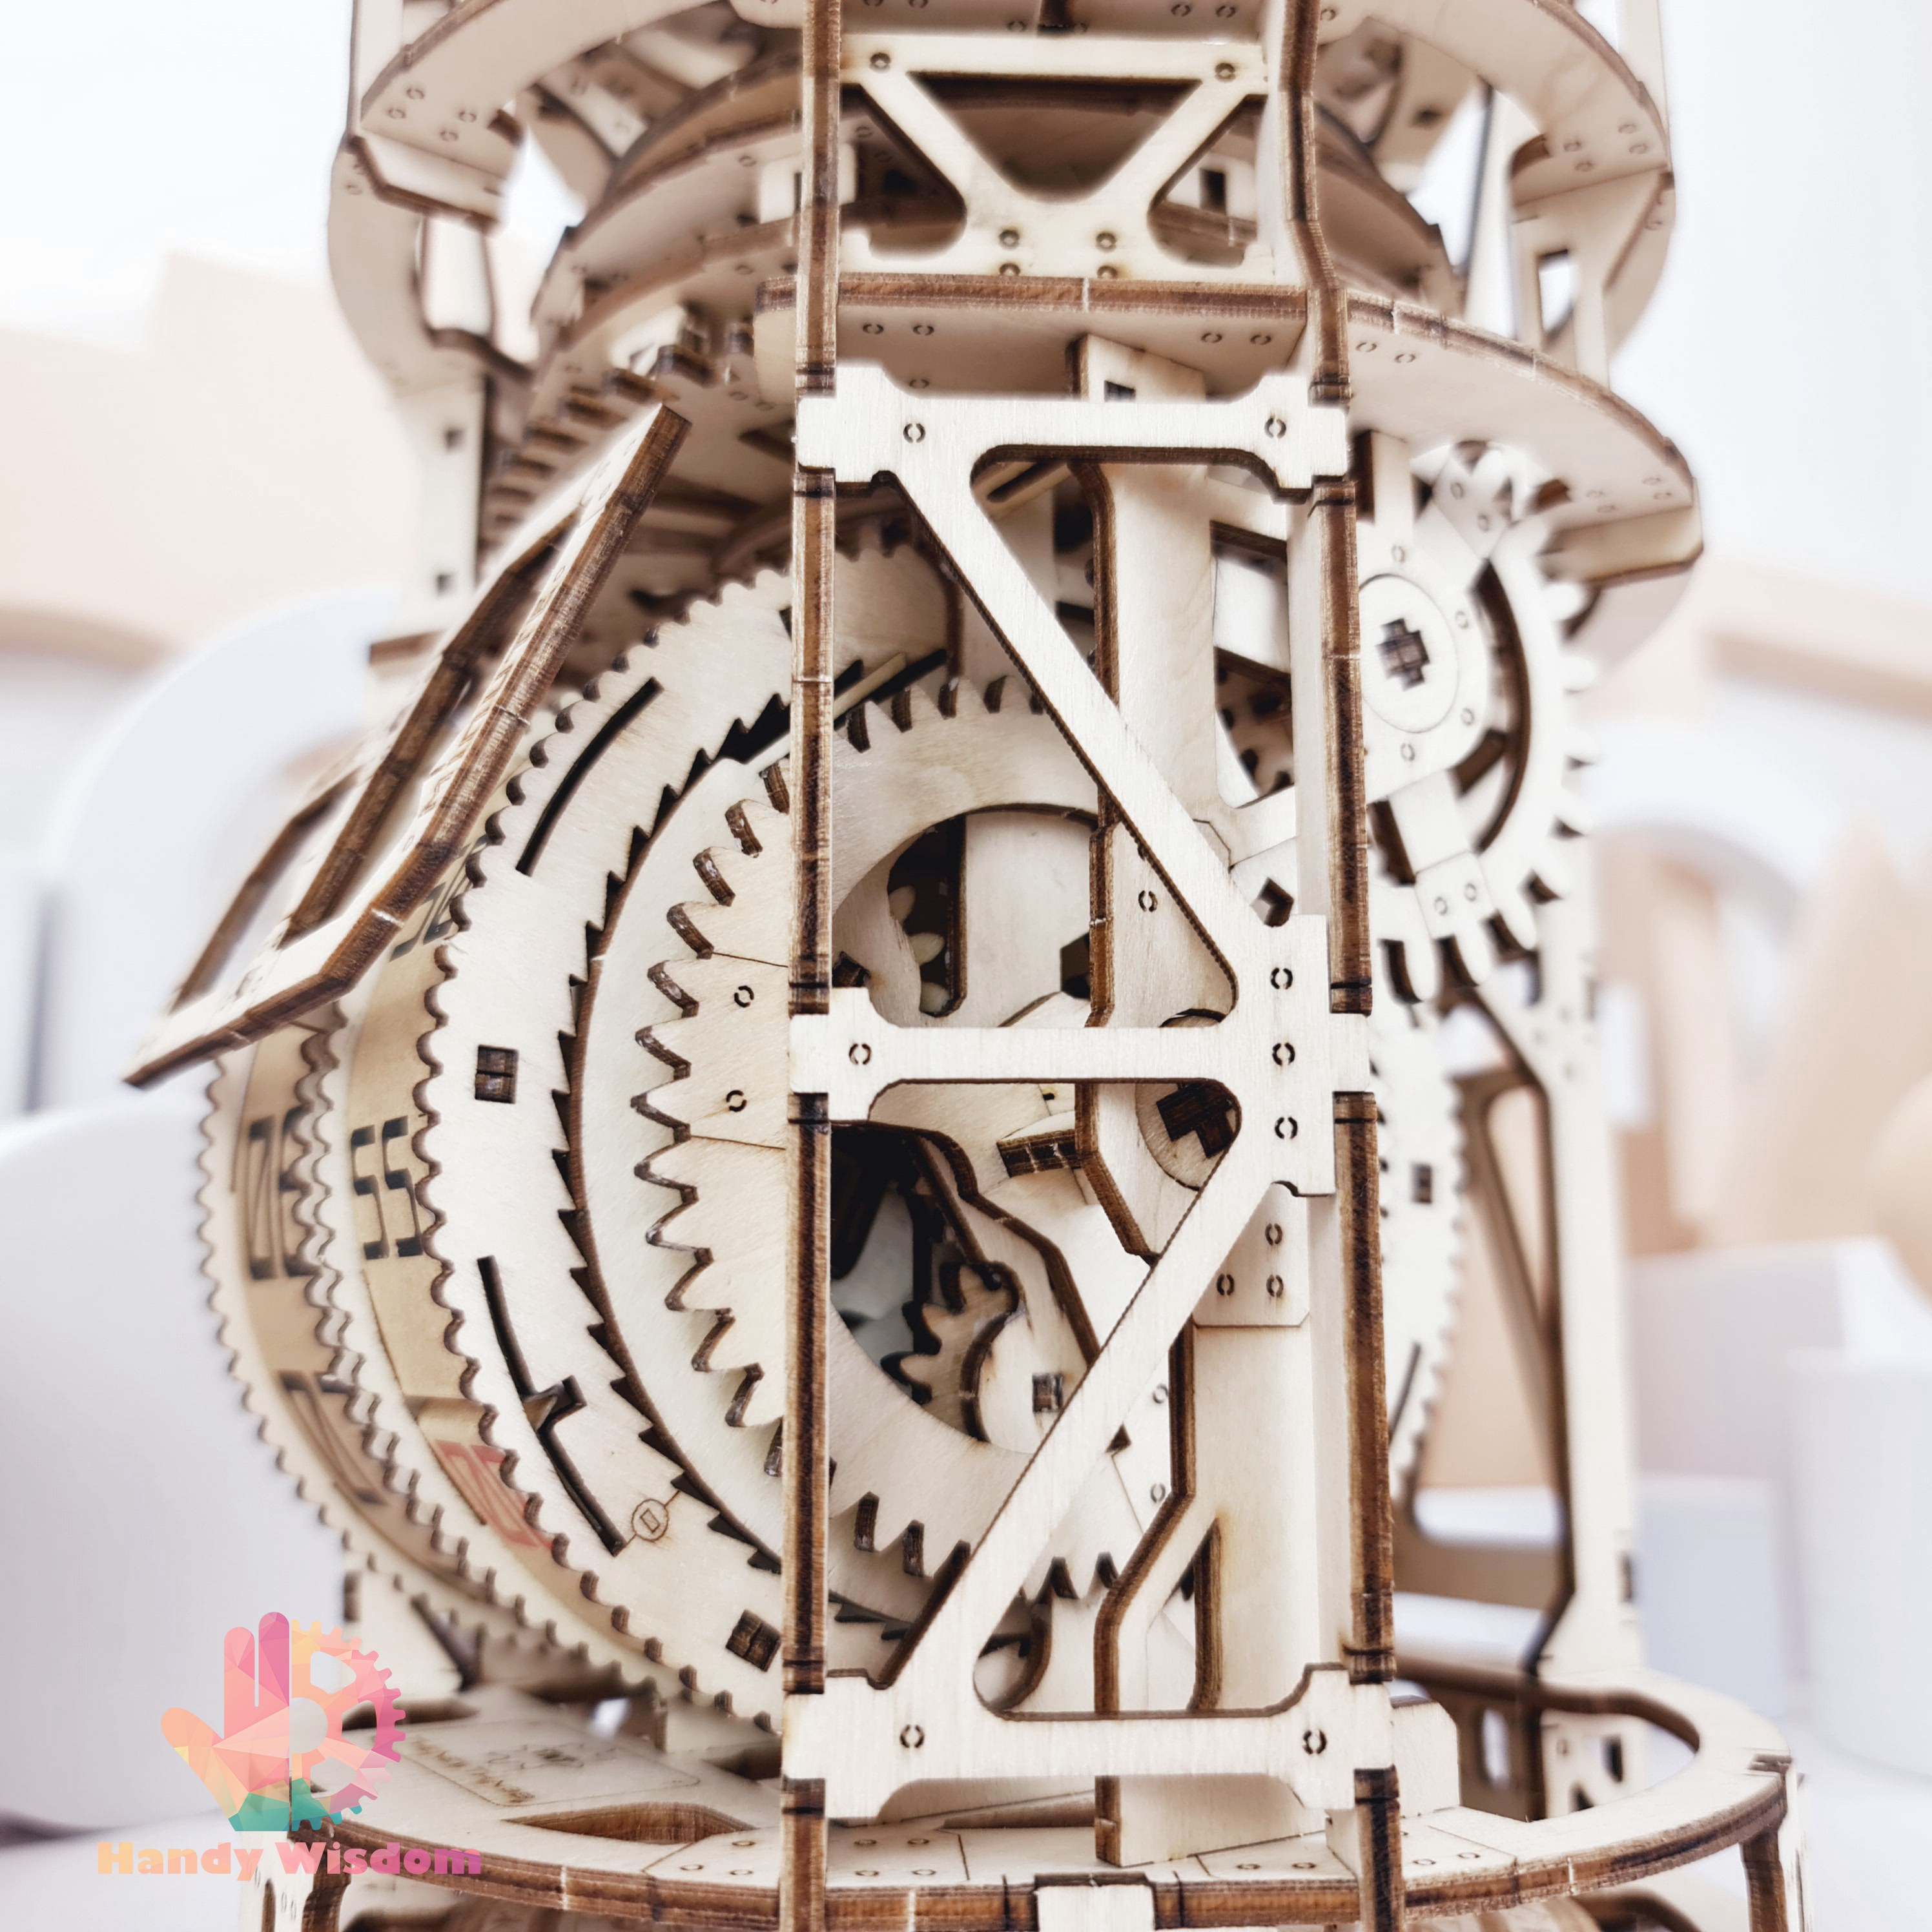 Mô hình gỗ chuyển động - Dream Tourbillon - Đồng hồ thiên văn